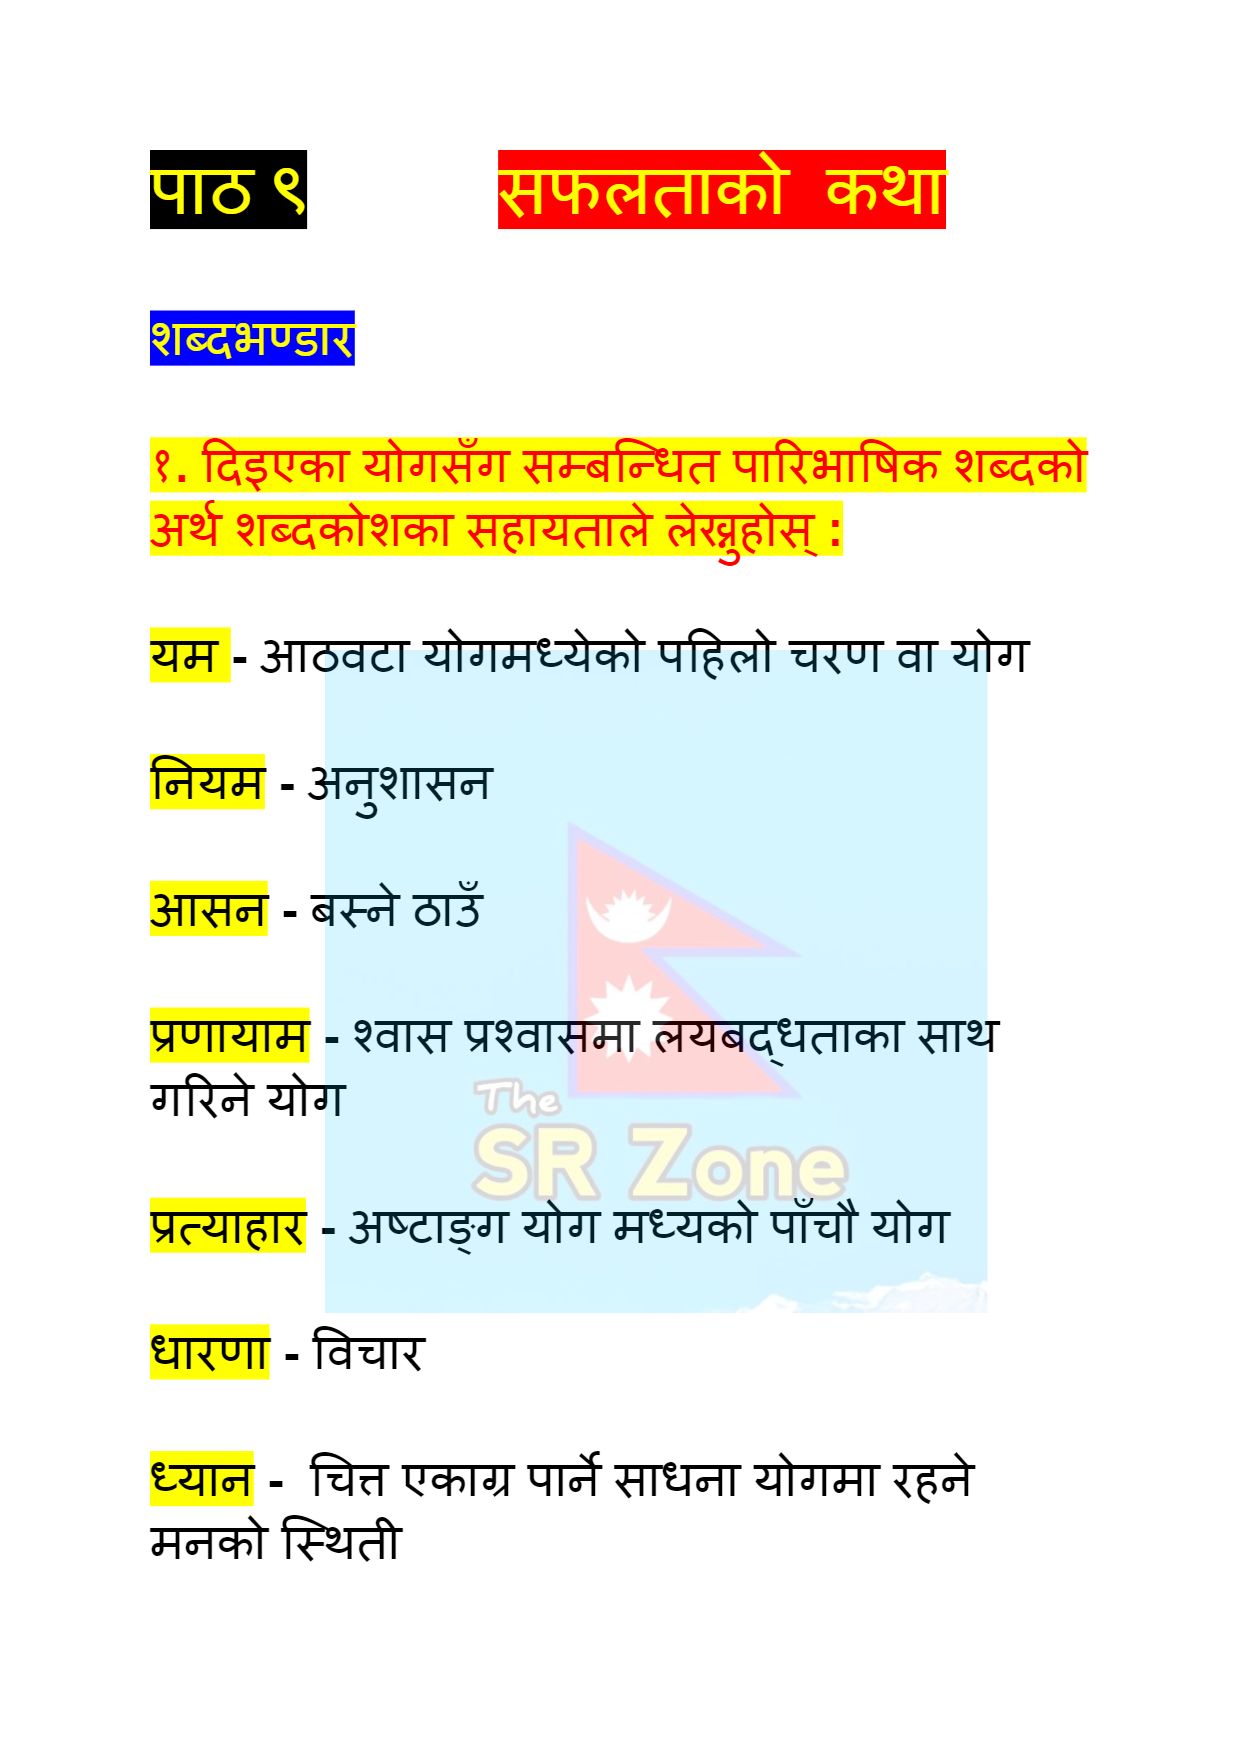 Safalta ko katha exercise: class 11 Nepali Unit 9 (entrepreneur story)